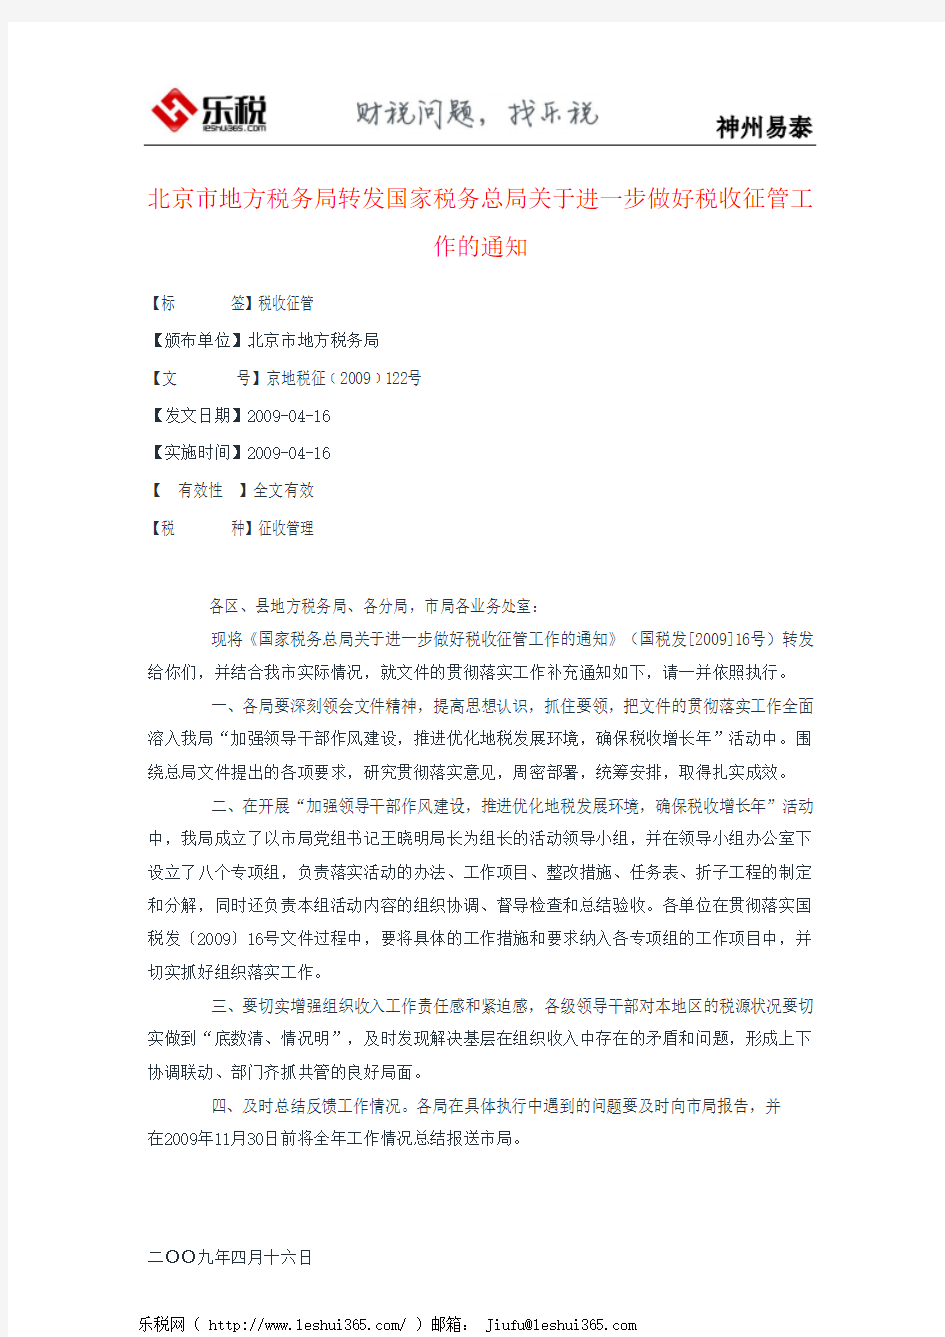 北京市地方税务局转发国家税务总局关于进一步做好税收征管工作的通知